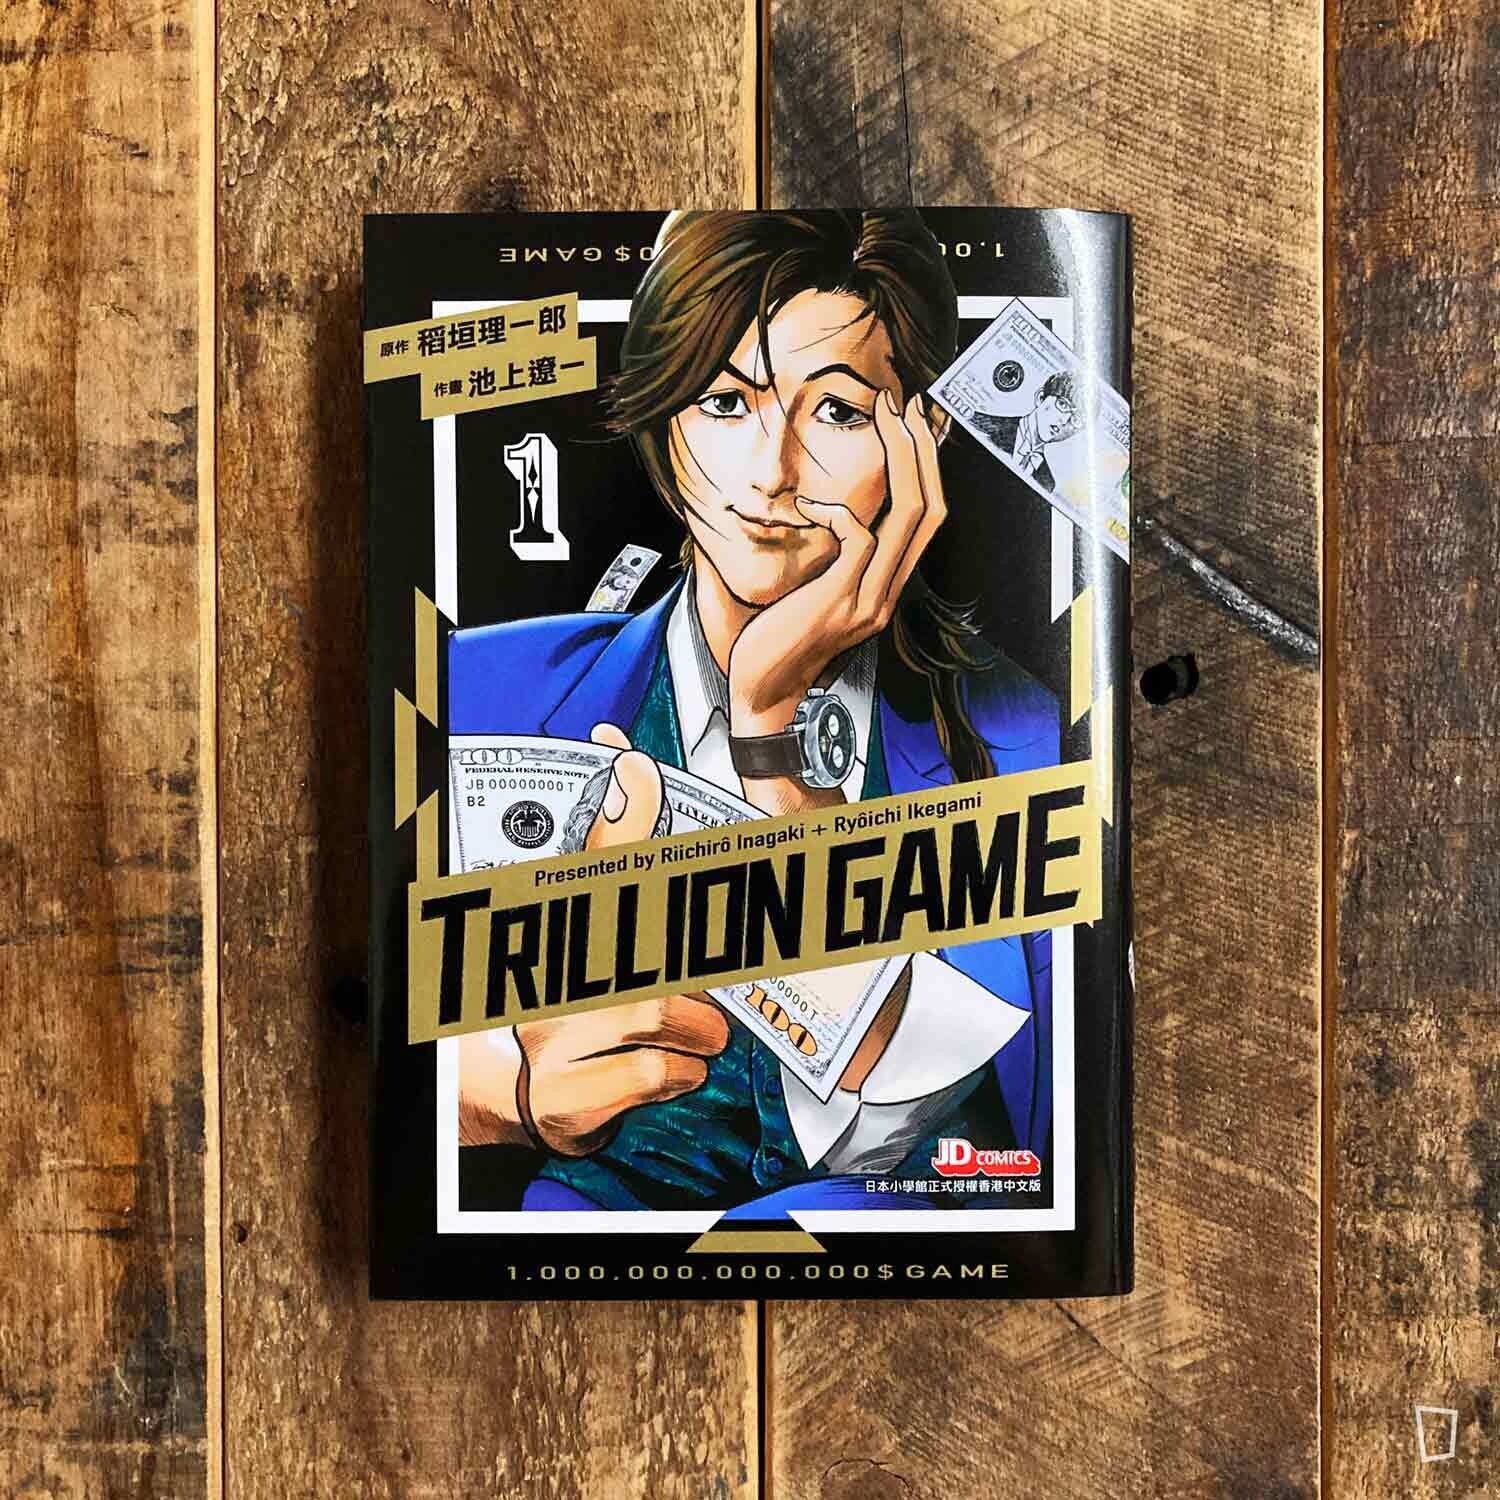 稻垣理一郎／池上遼一《Trillion Game 一兆遊戲》第 1 期